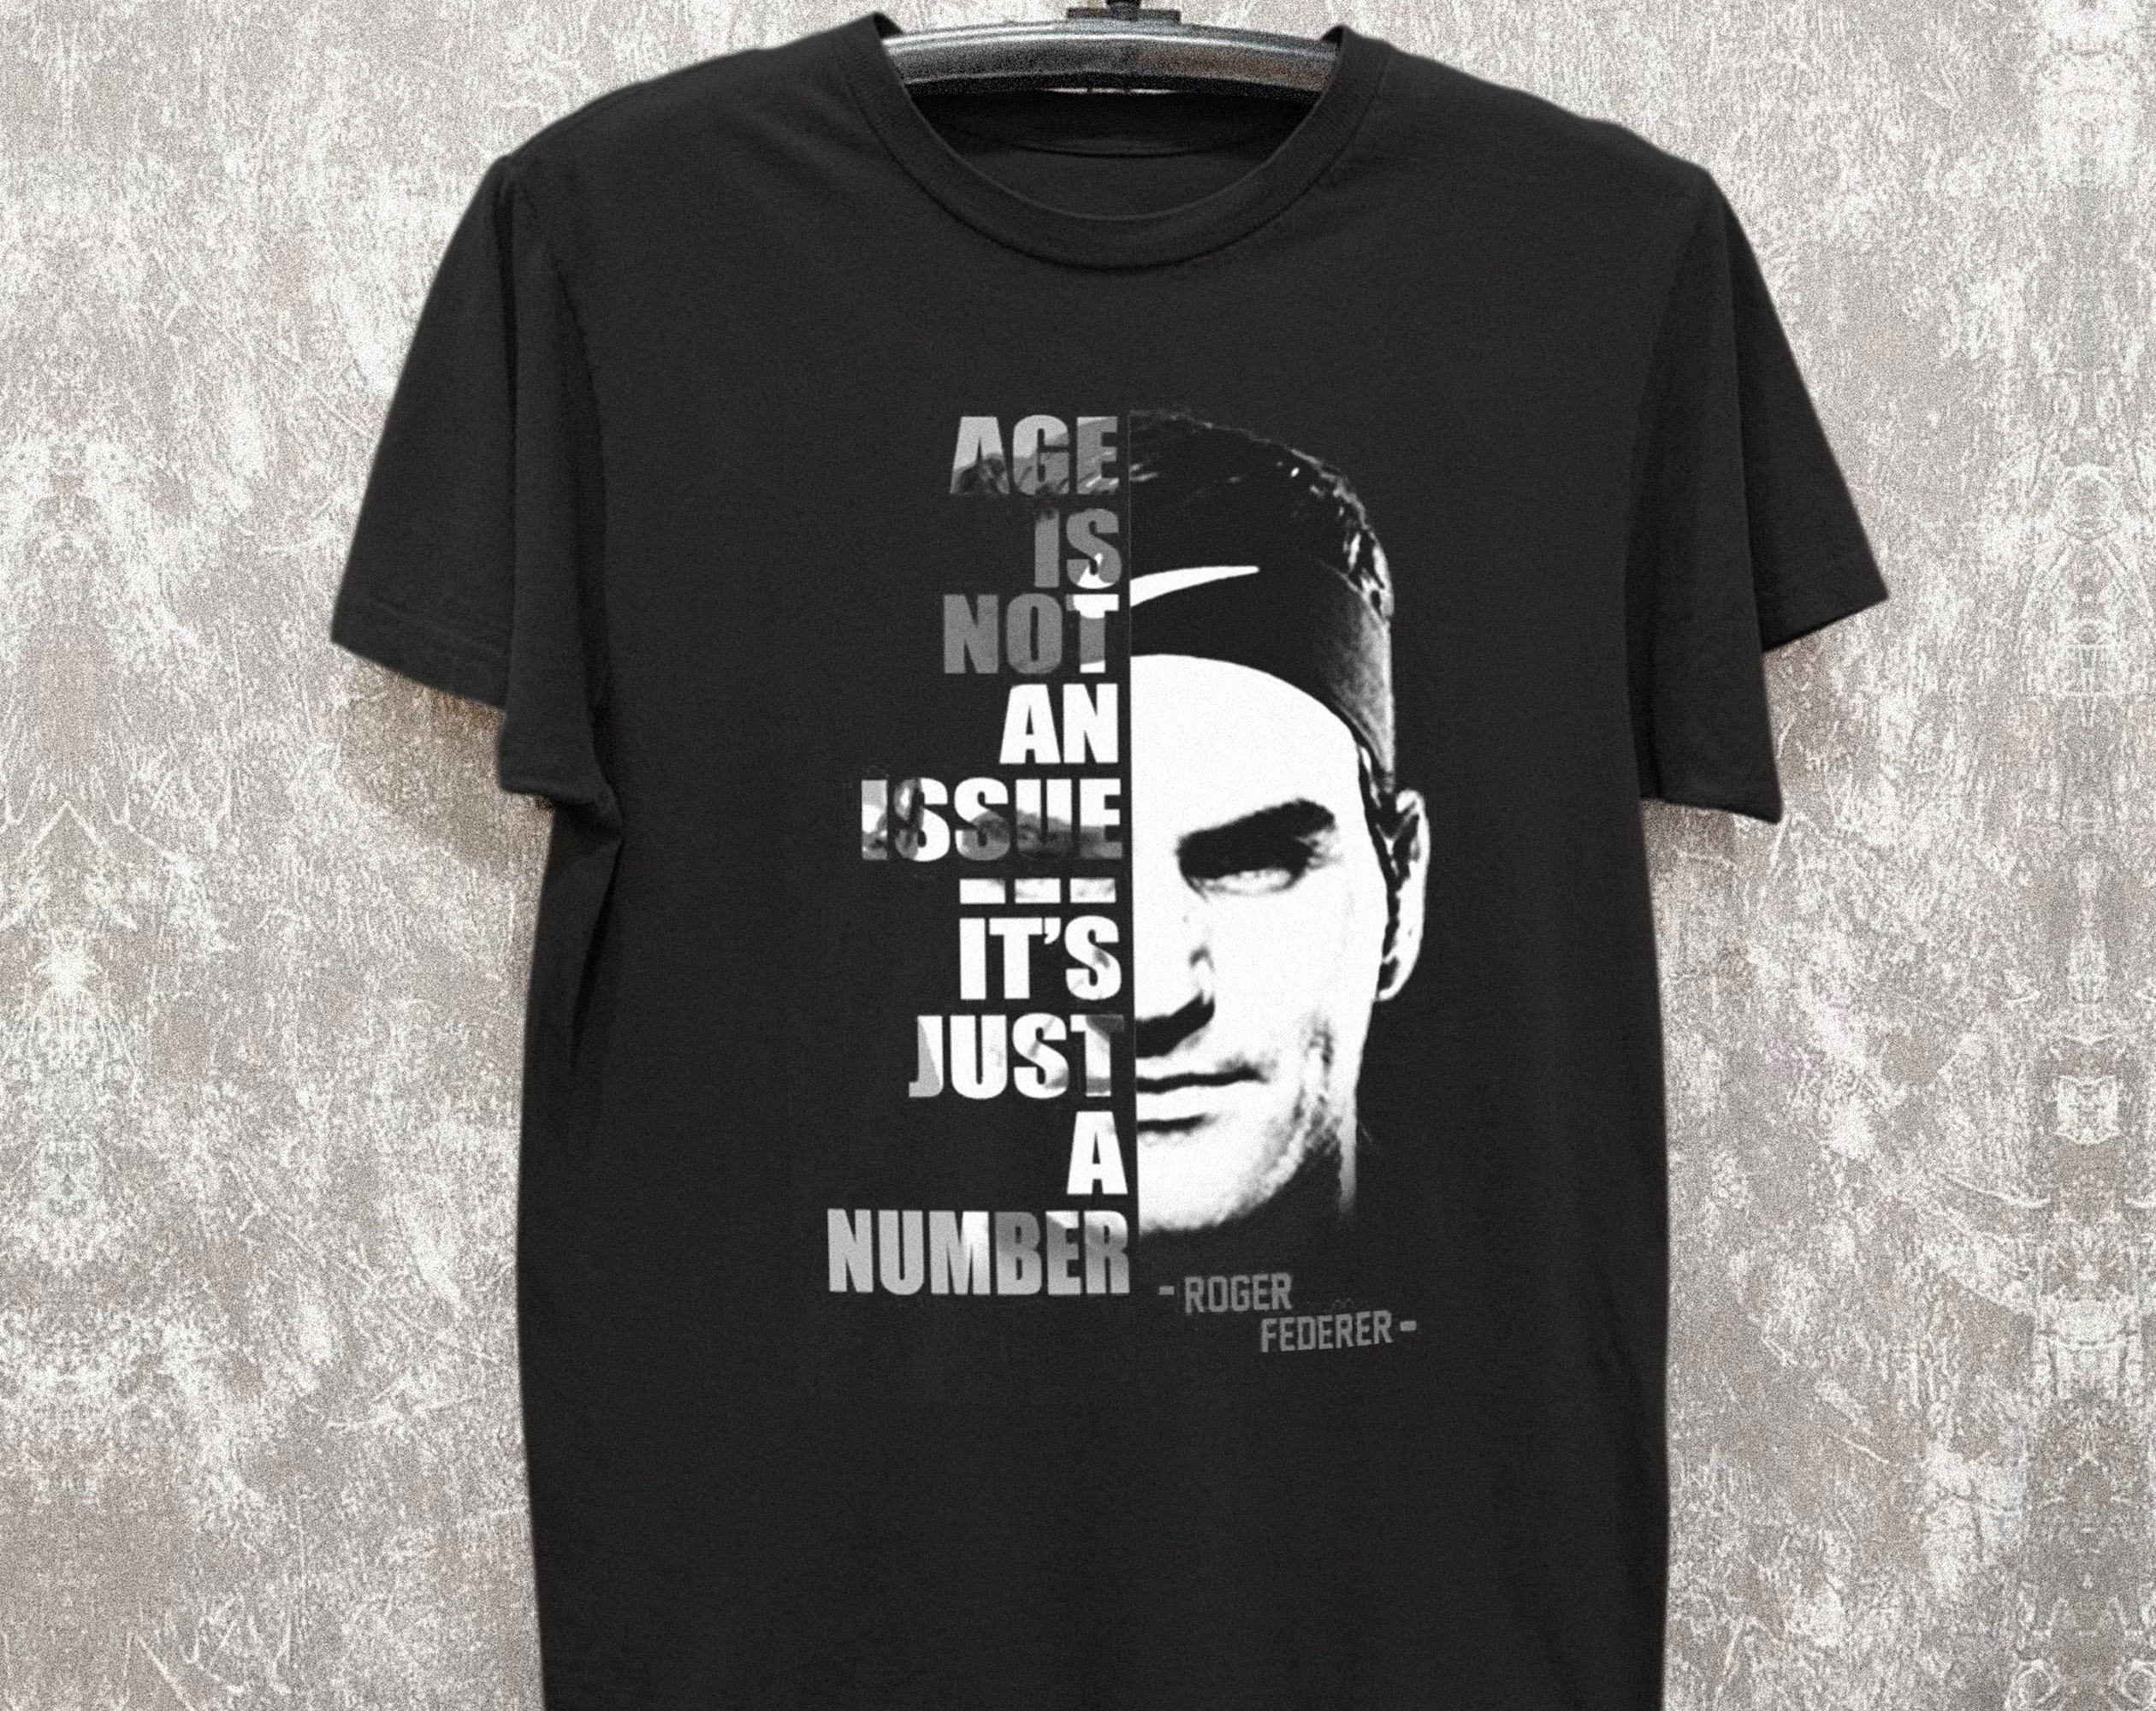 Discover Roger Federer legend T-Shirt